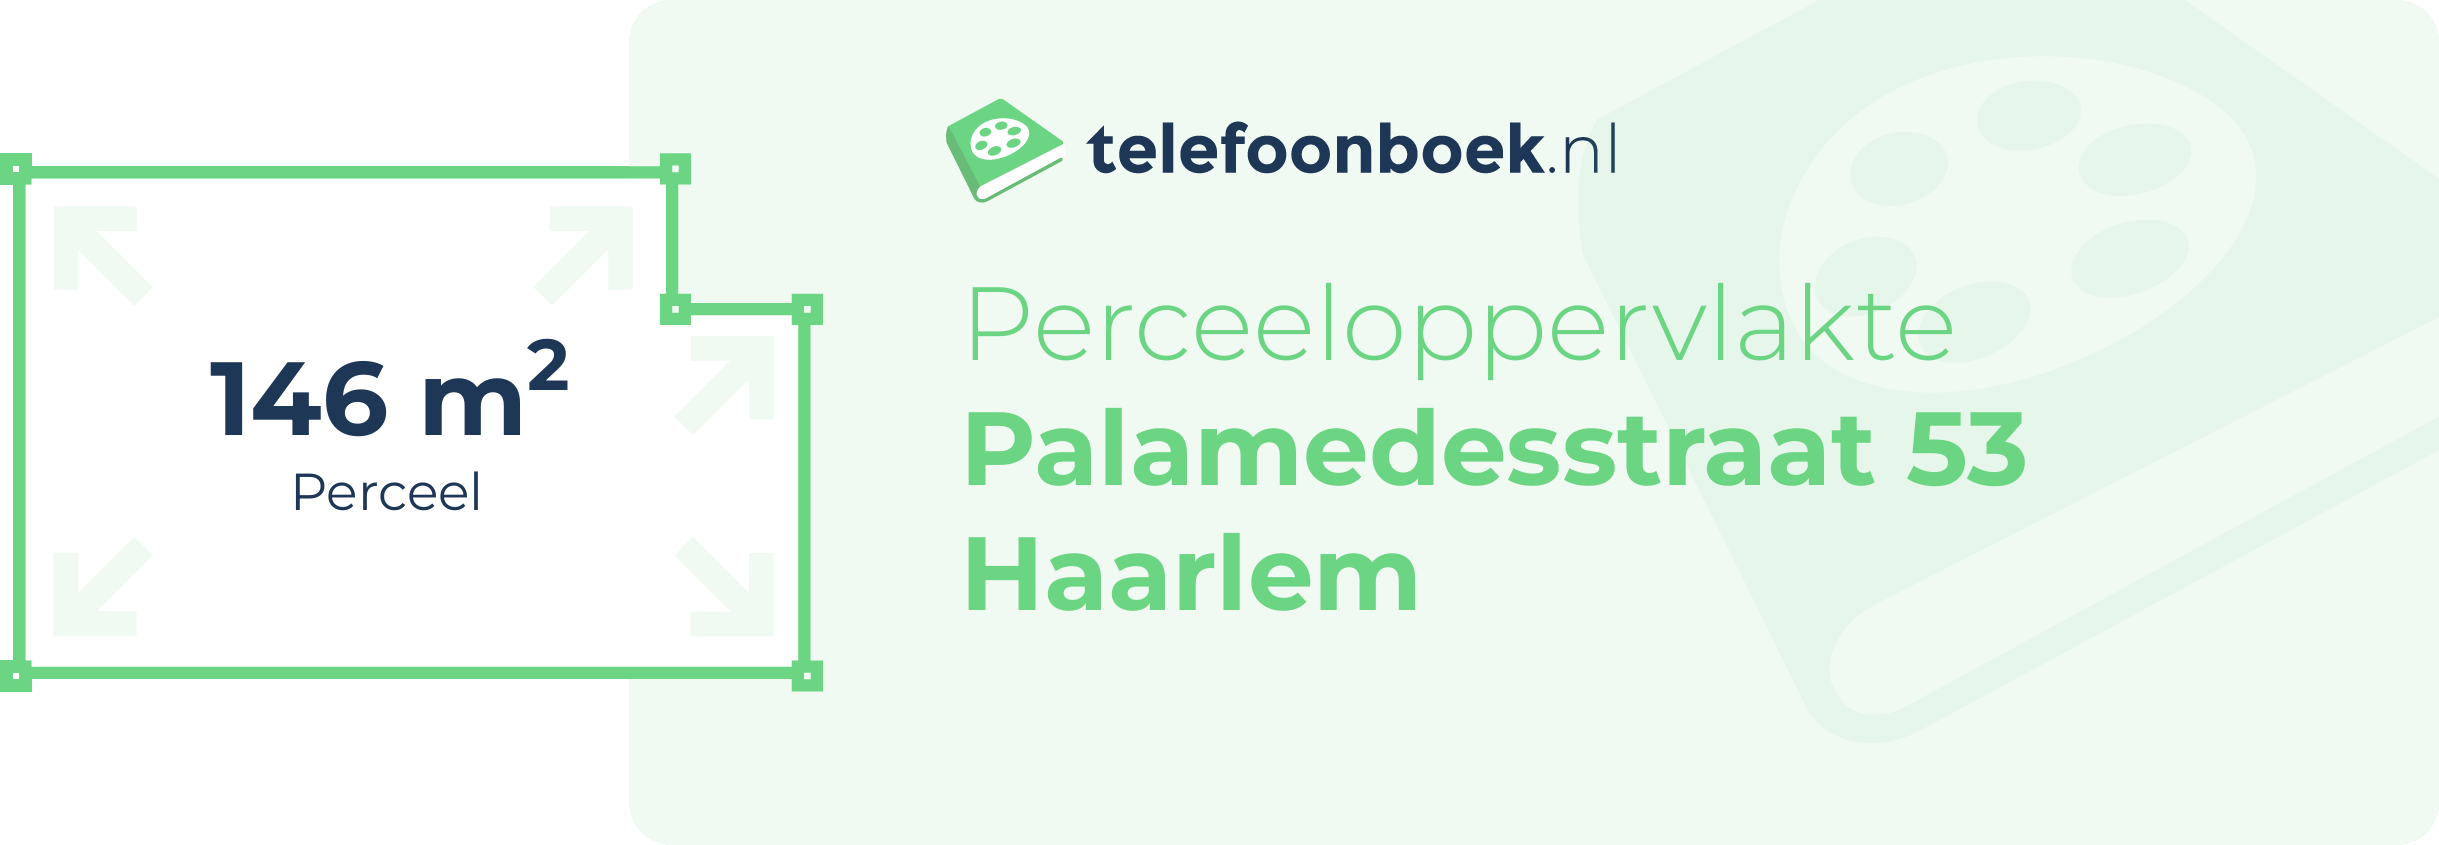 Perceeloppervlakte Palamedesstraat 53 Haarlem